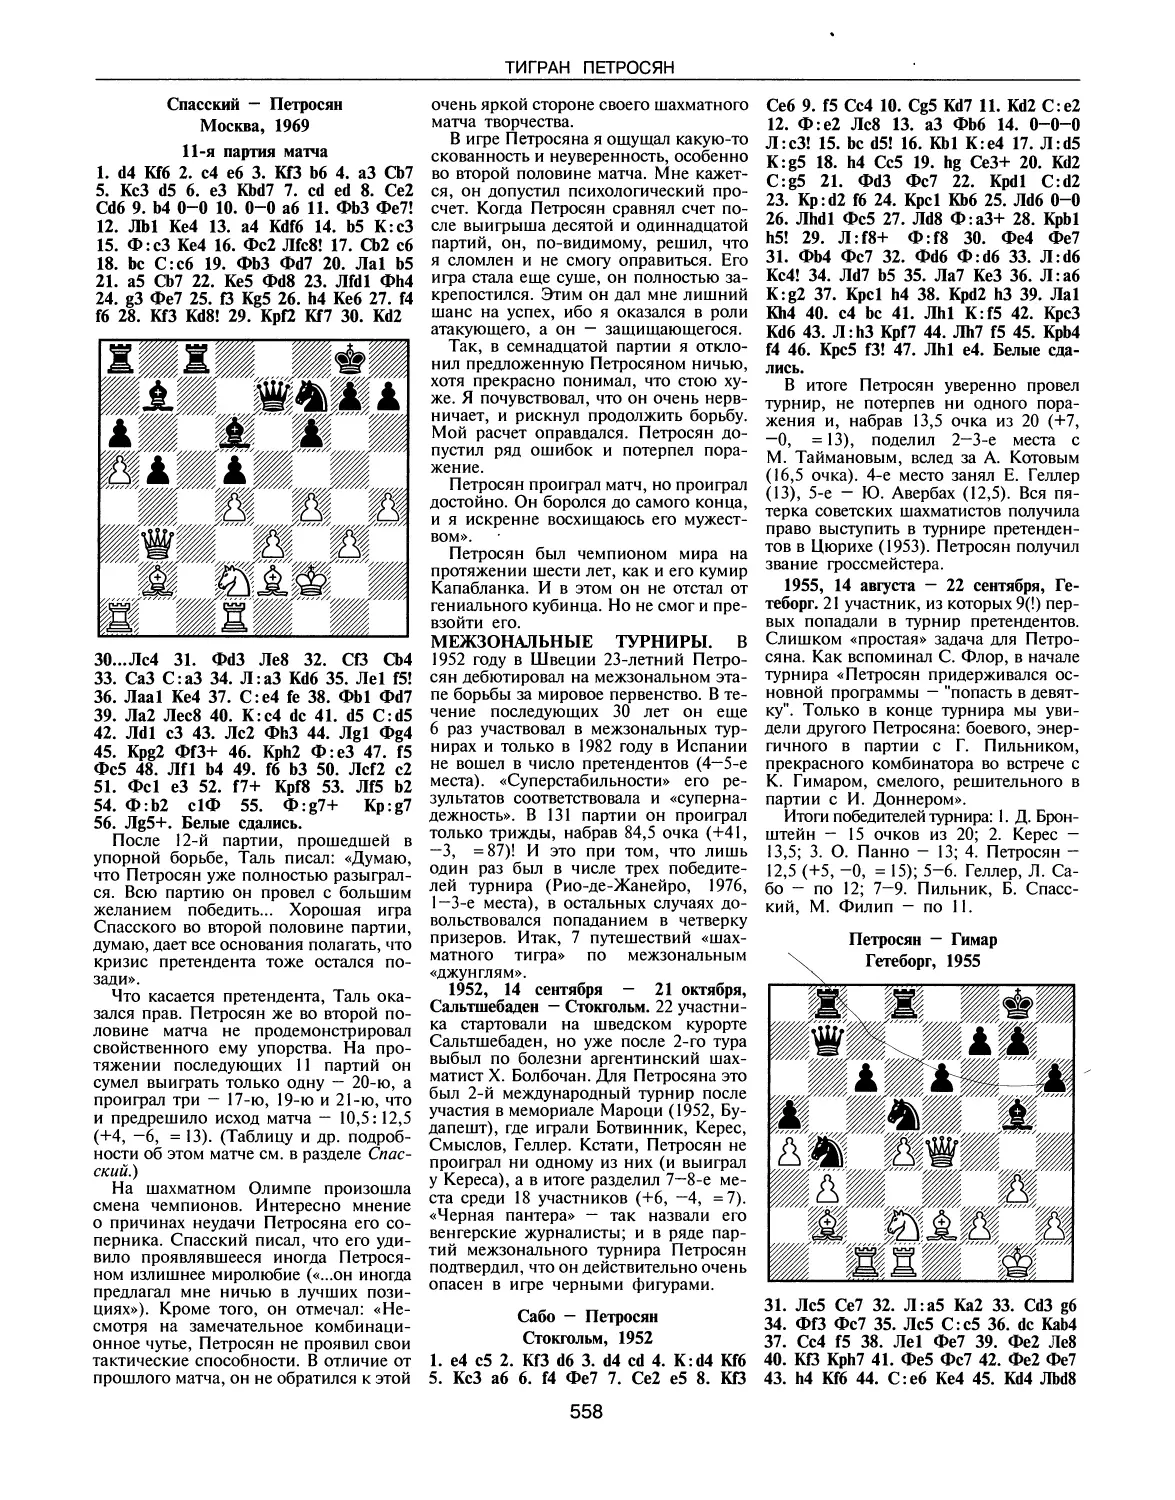 Межзональные турниры
Гетеборг, 1955